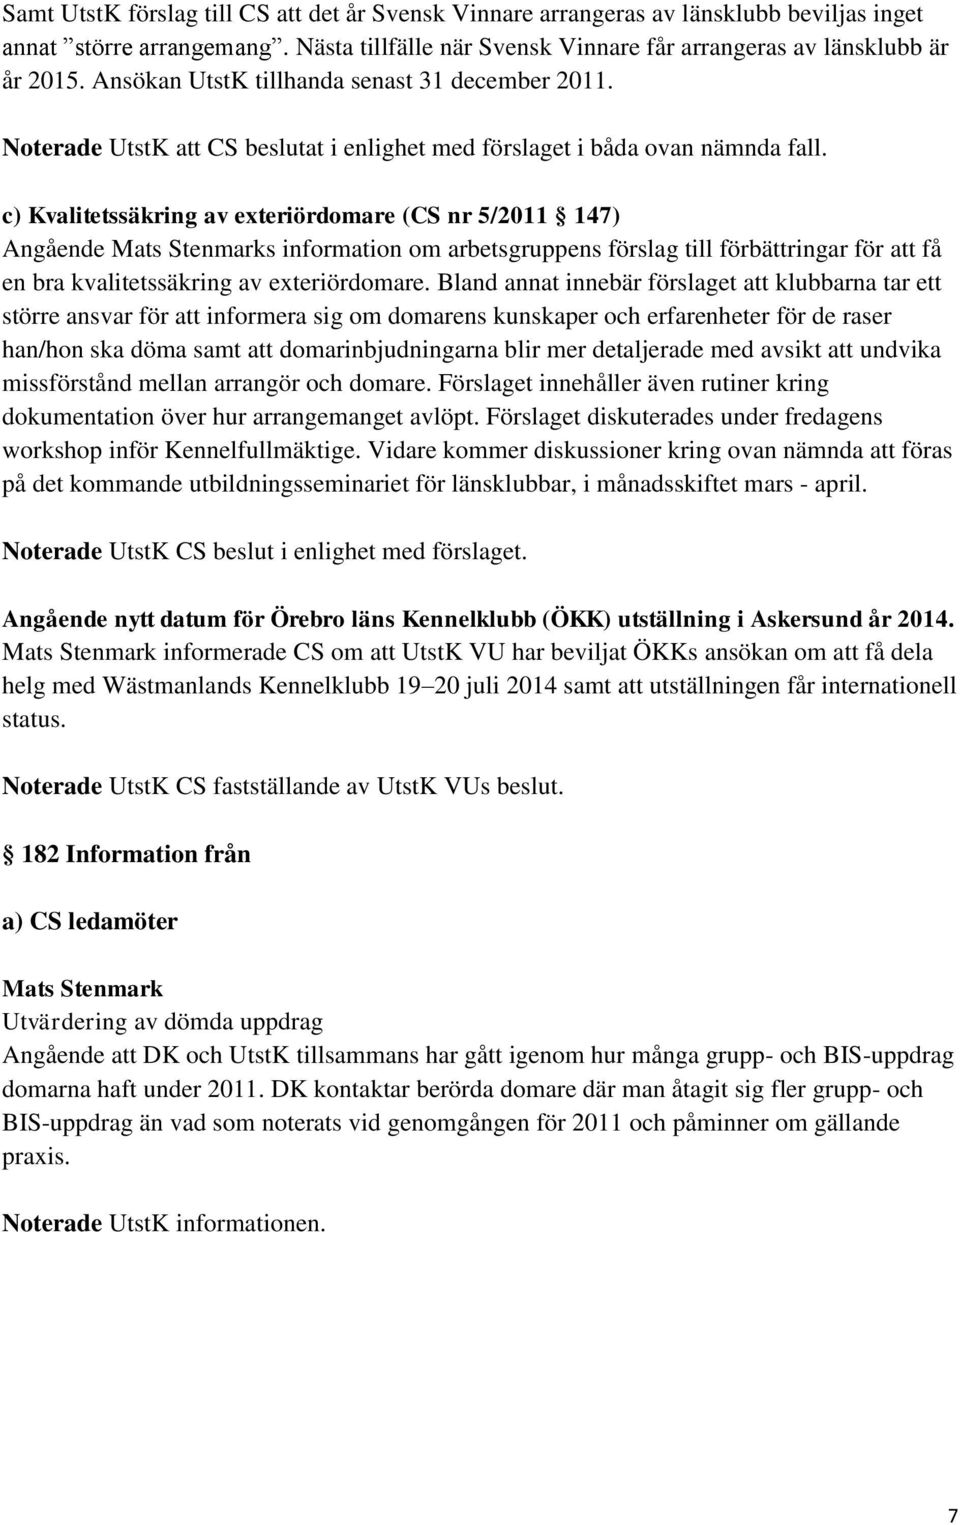 c) Kvalitetssäkring av exteriördomare (CS nr 5/2011 147) Angående Mats Stenmarks information om arbetsgruppens förslag till förbättringar för att få en bra kvalitetssäkring av exteriördomare.